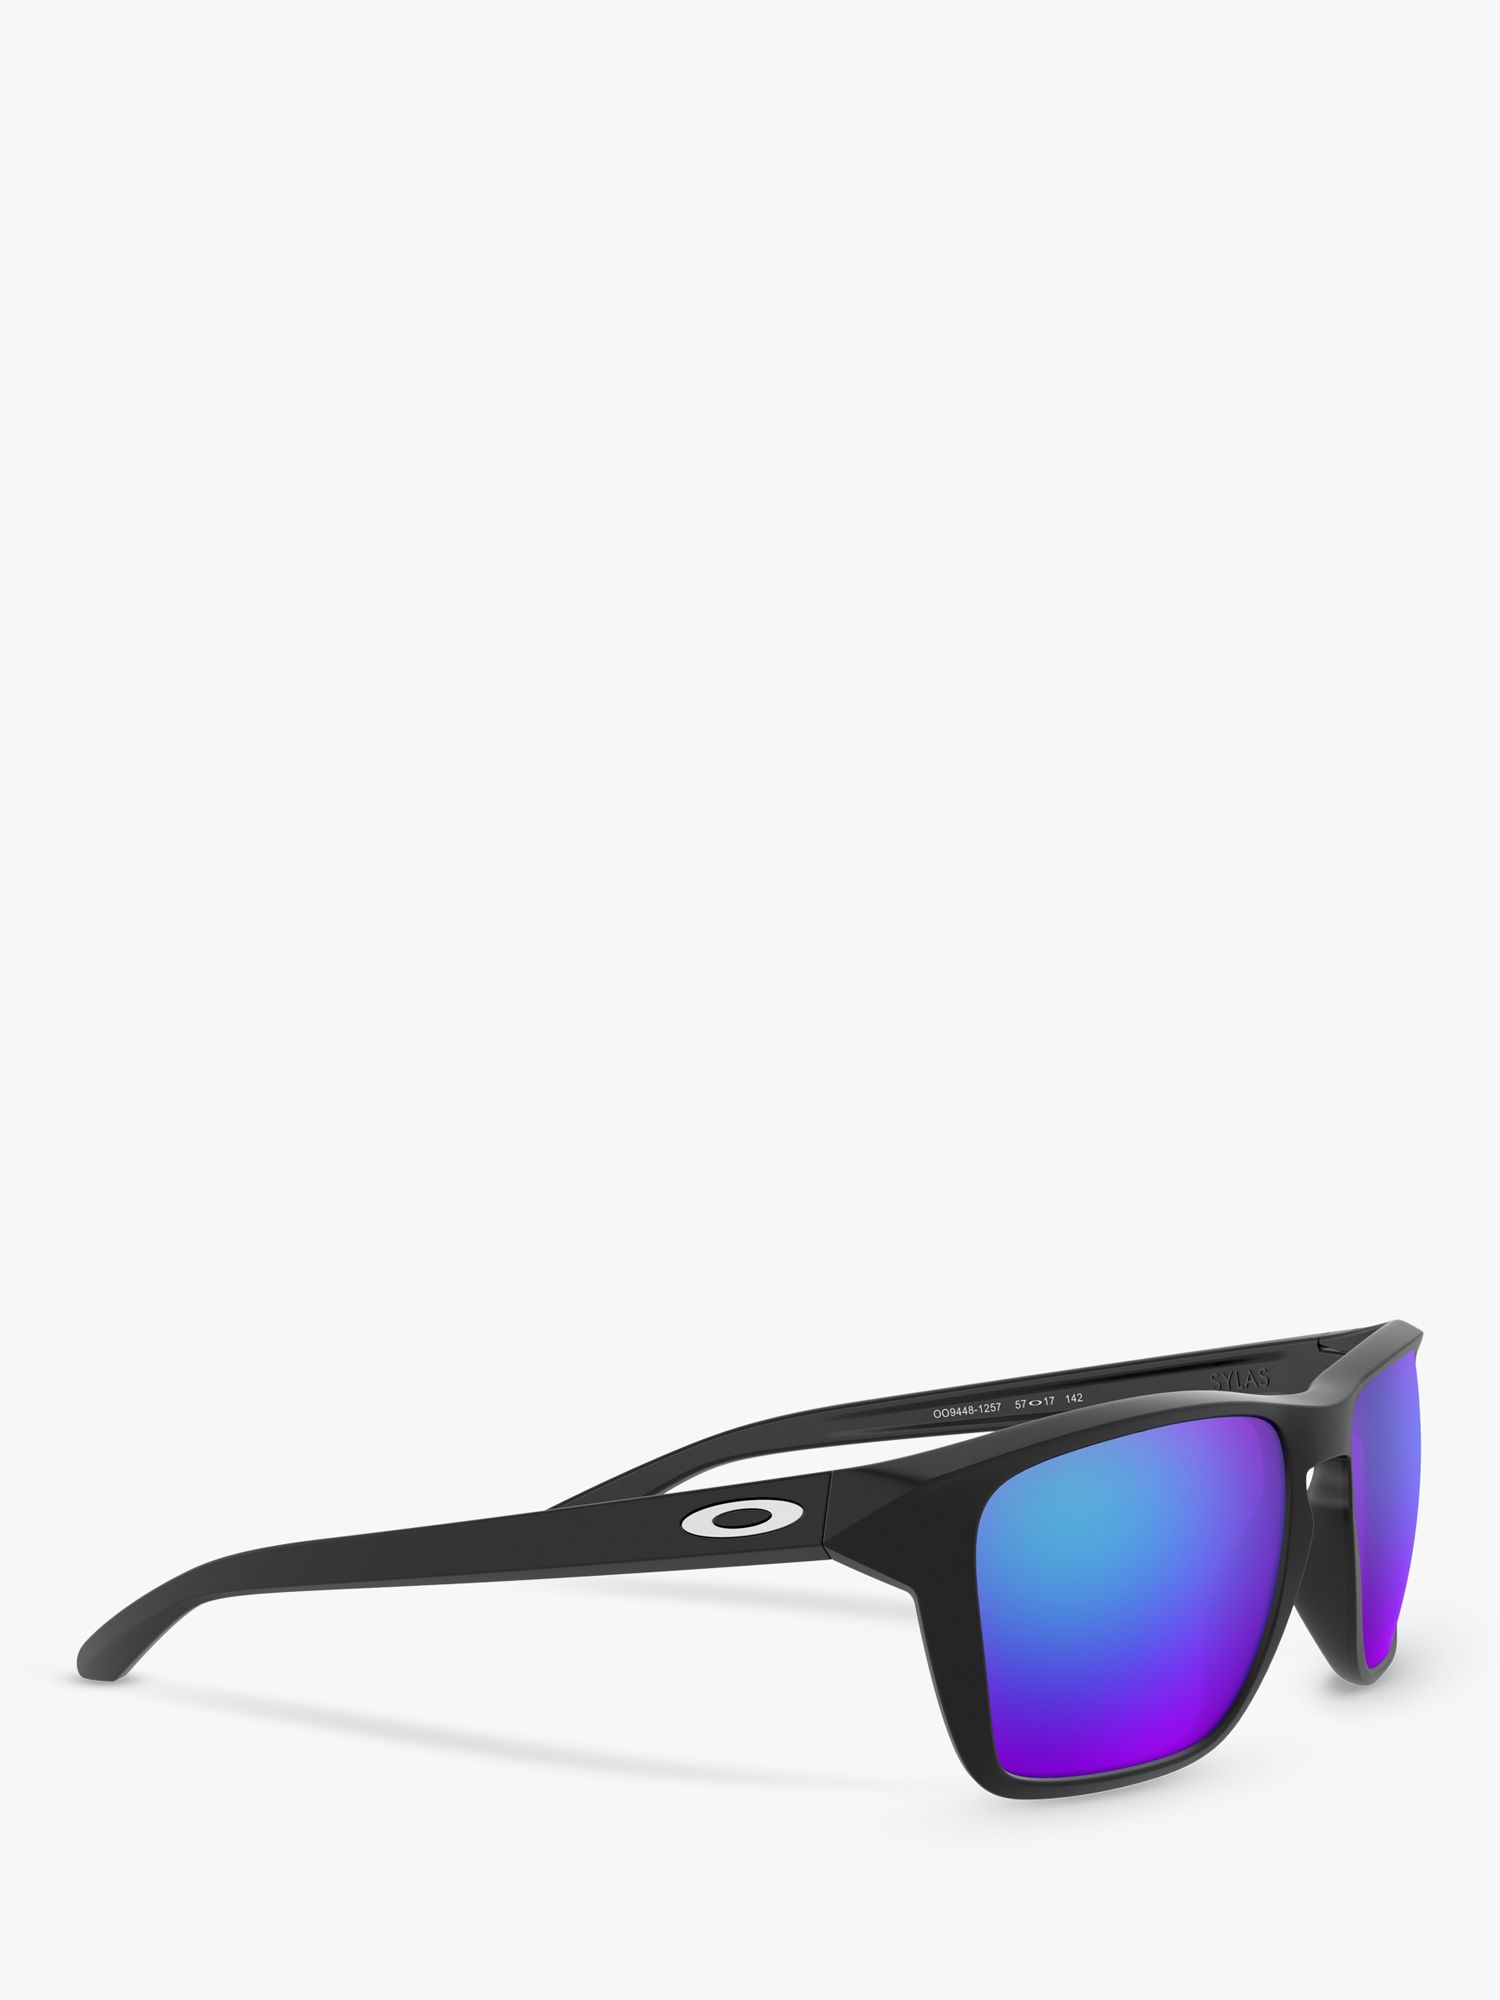 Oakley Men's Sylas Sunglasses